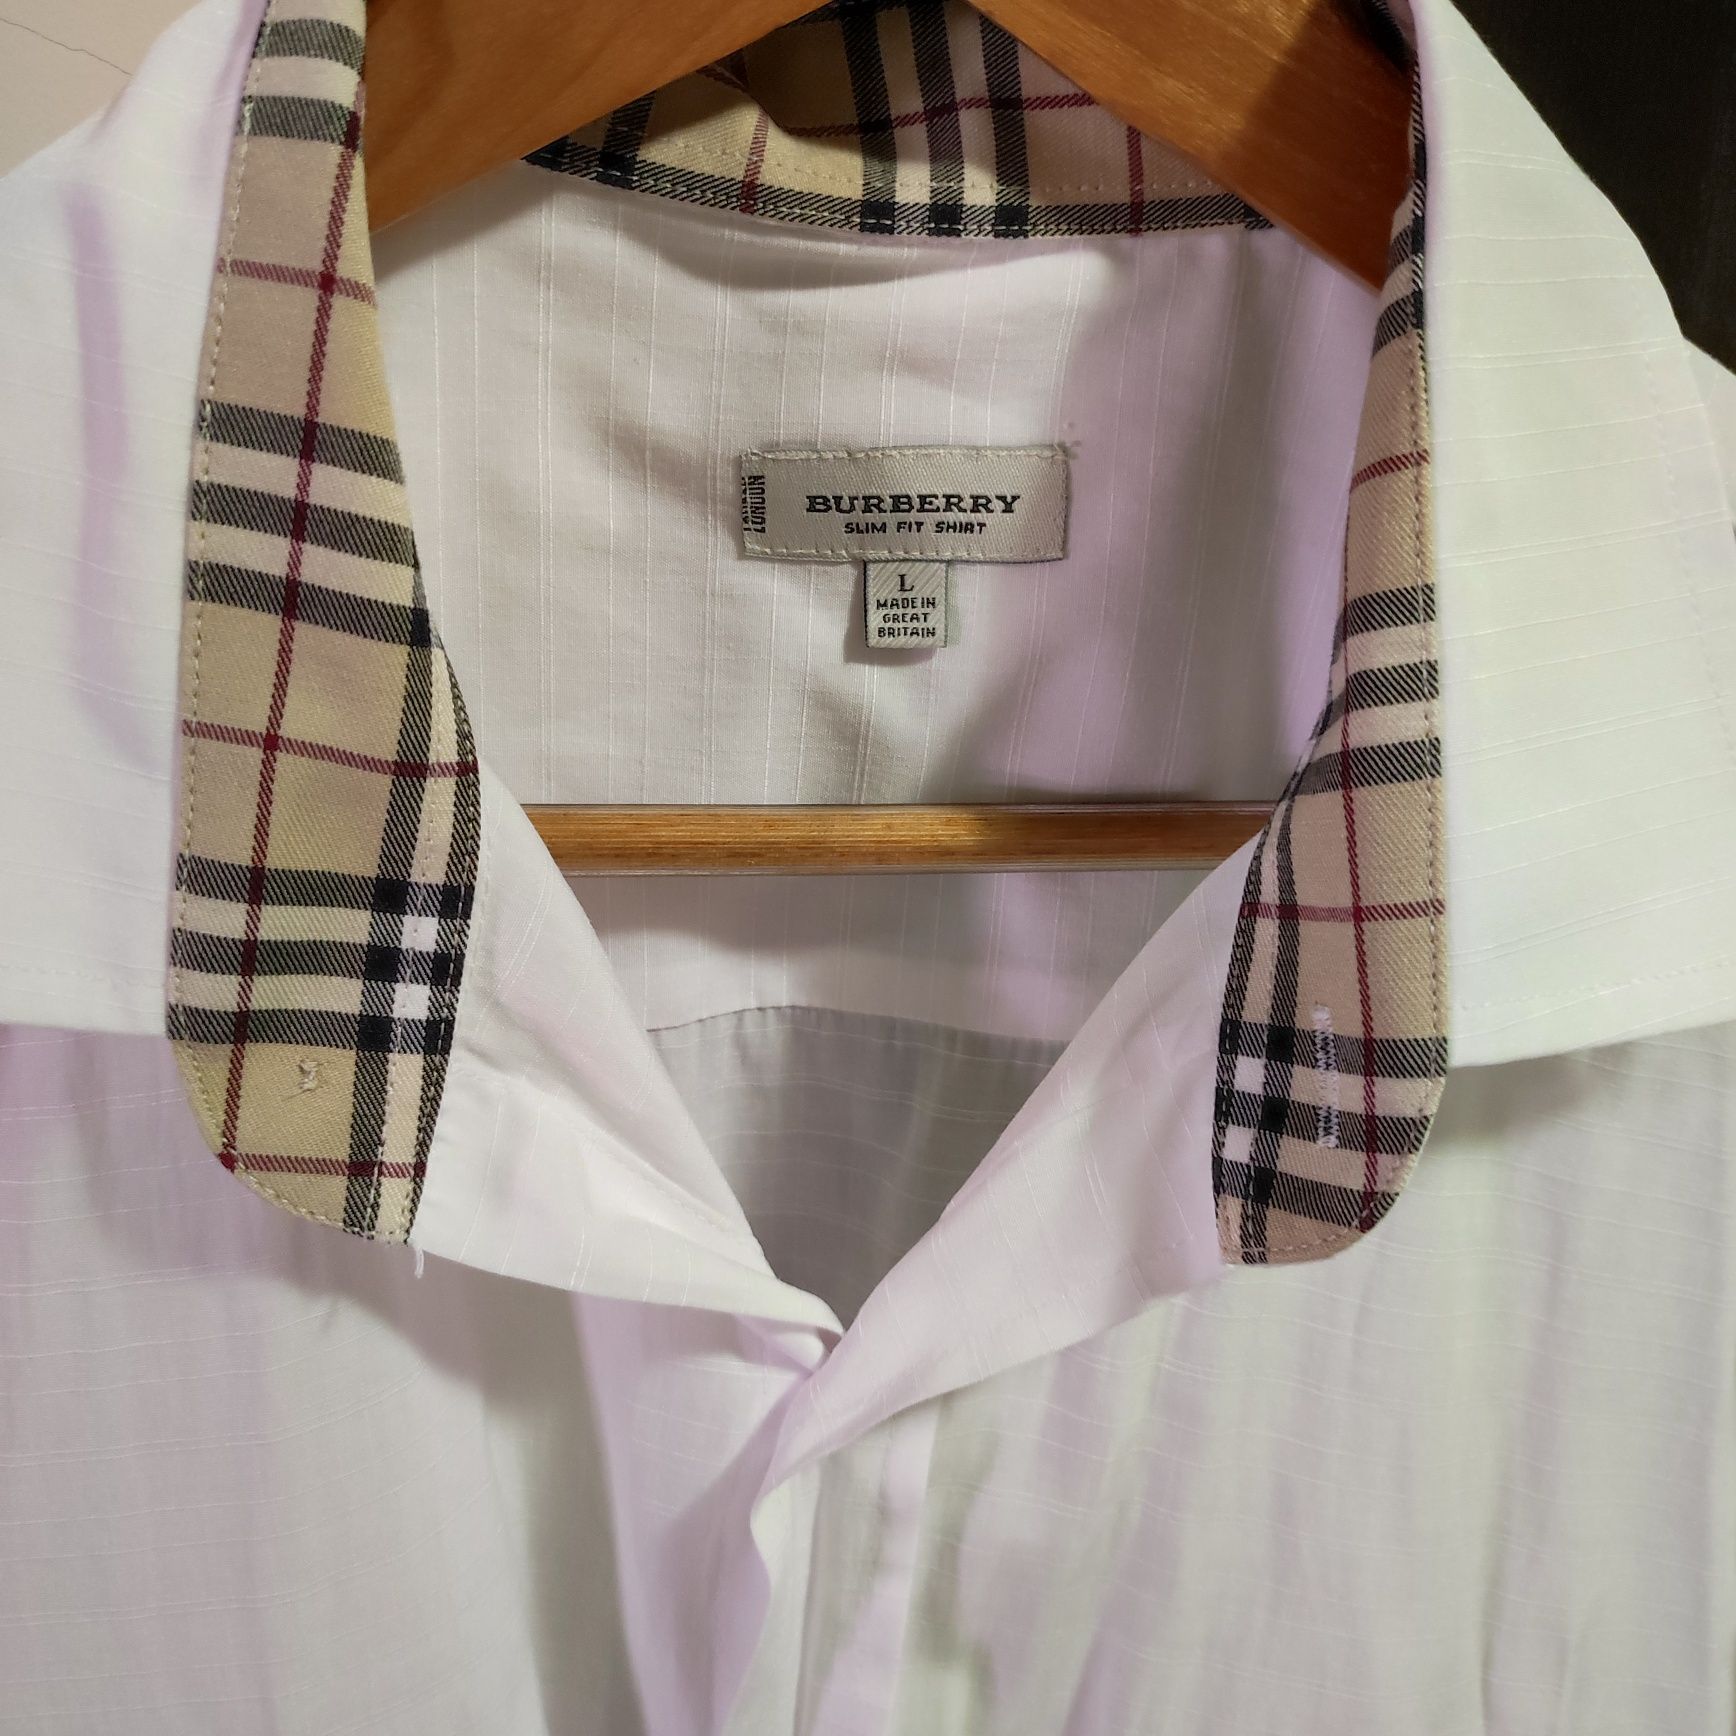 Мъжки ризи Armani, Burberry,Levis